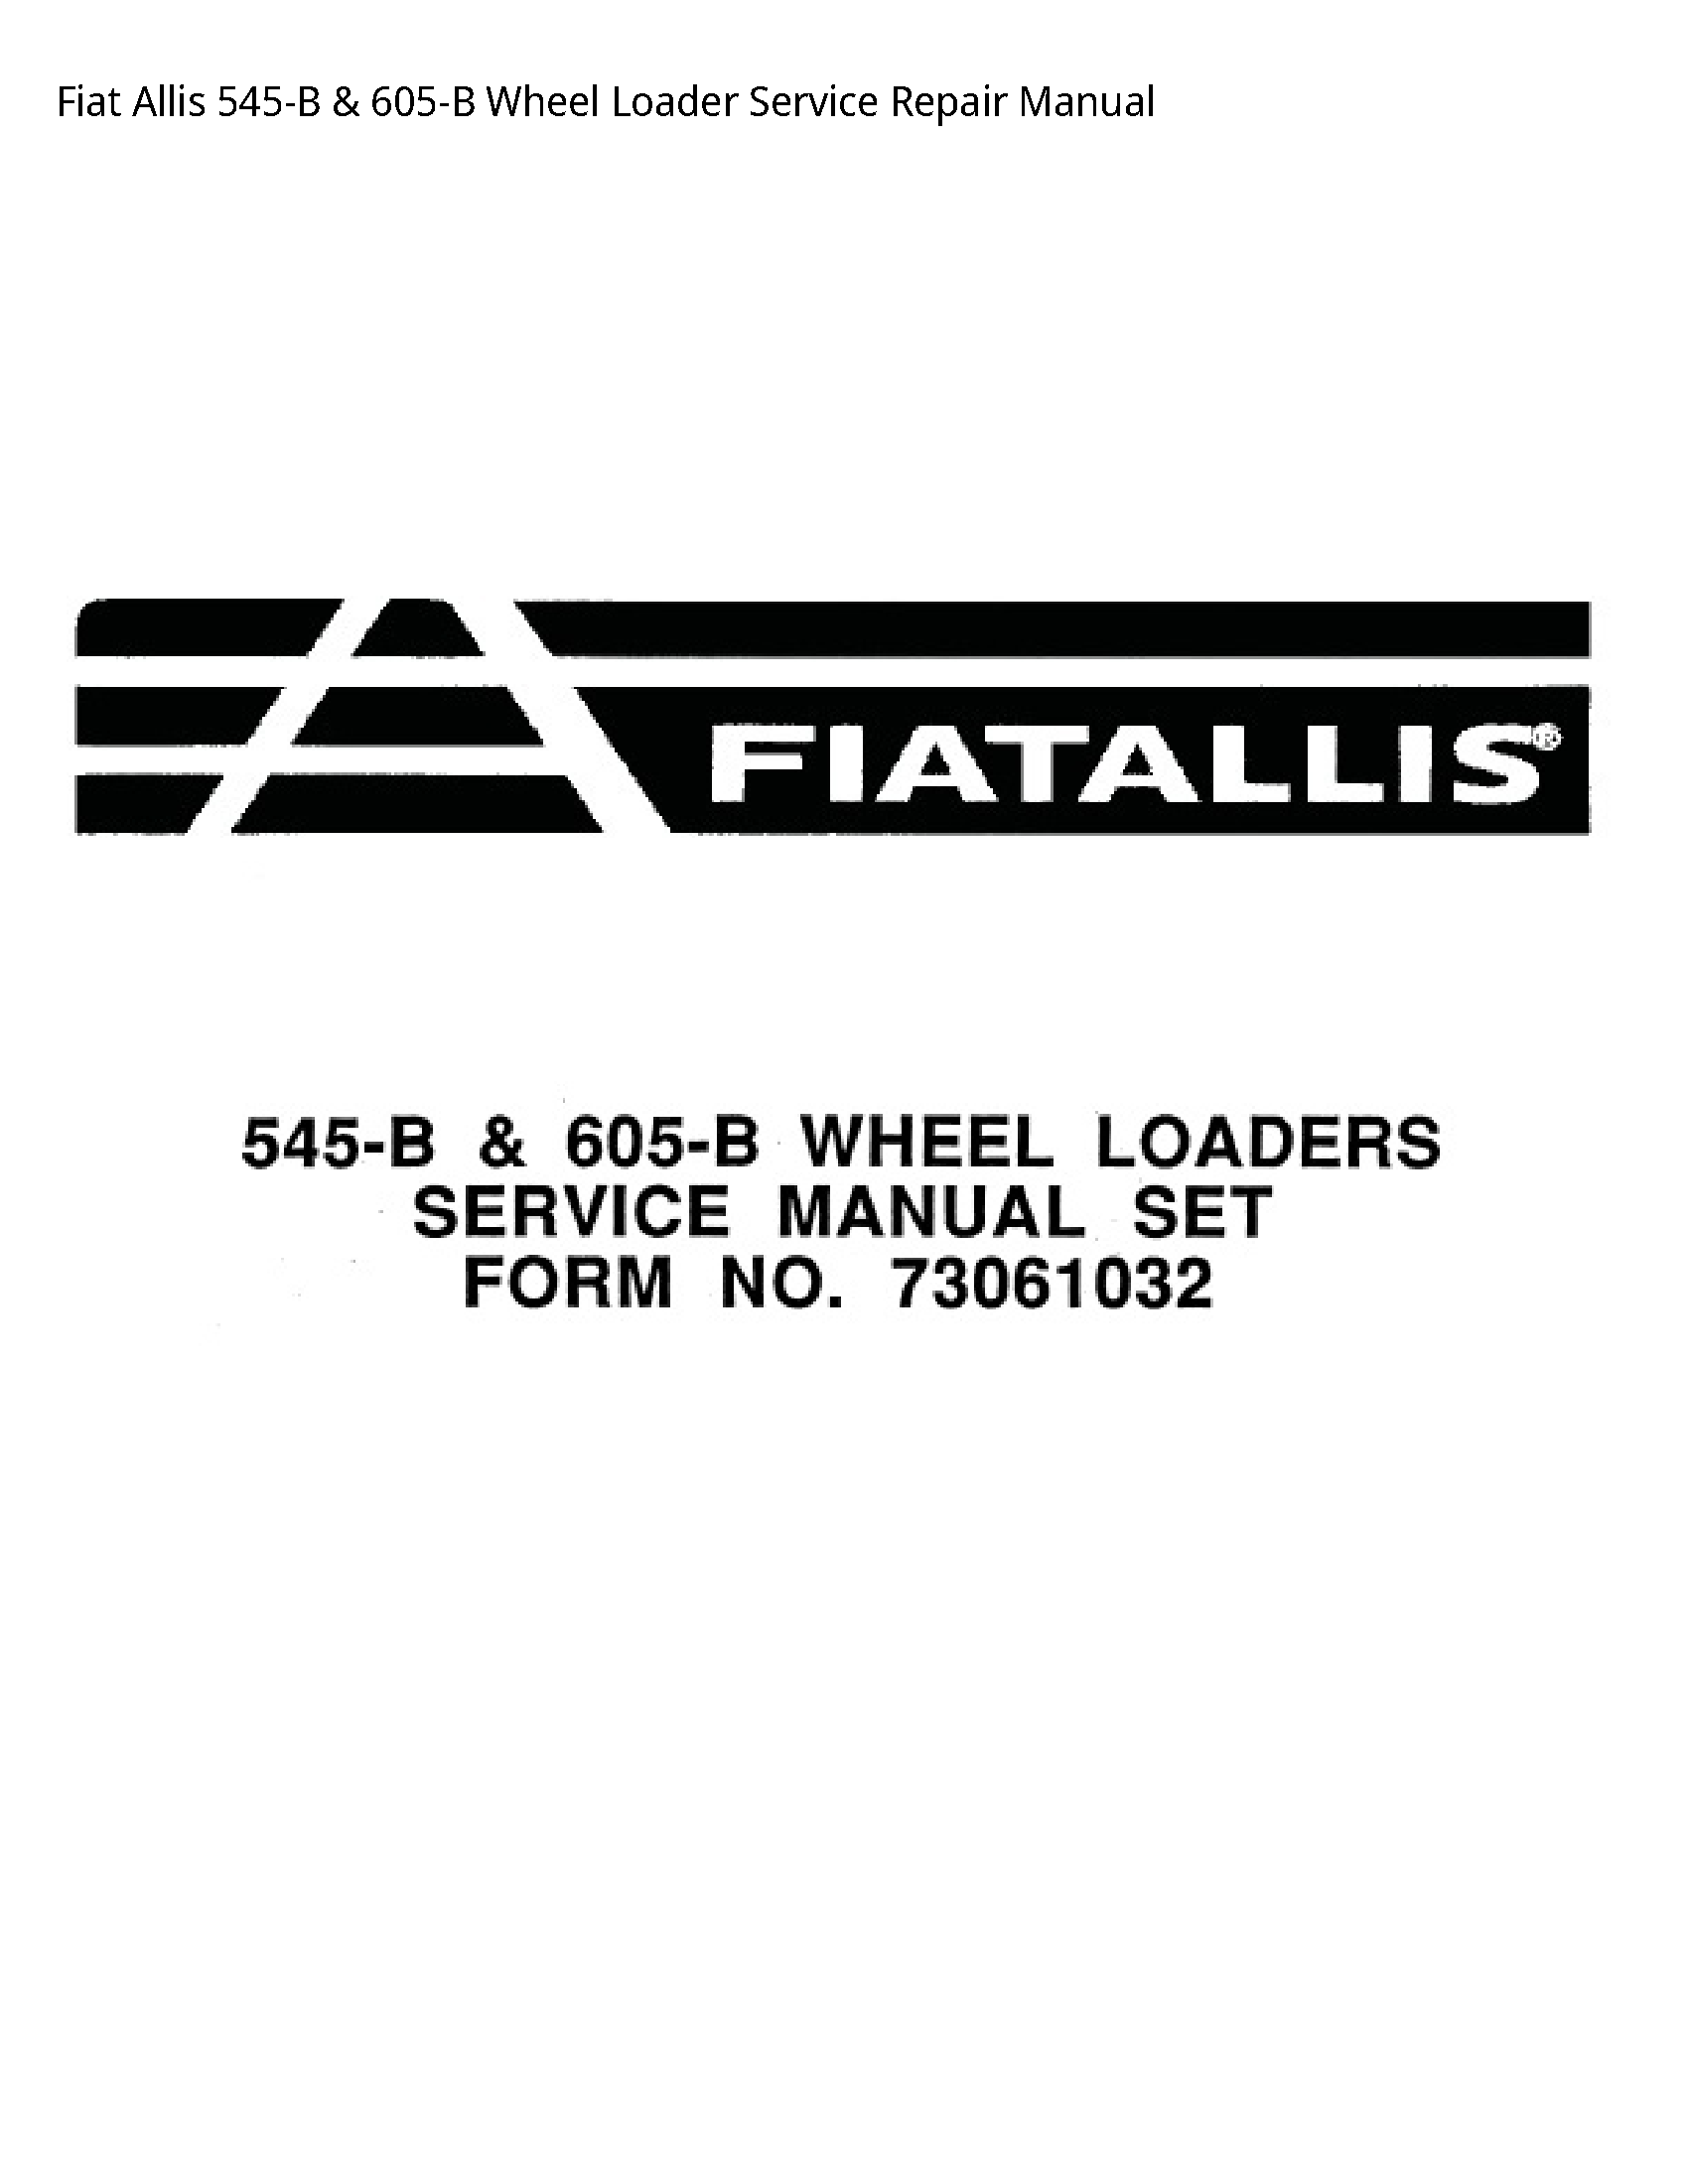 Fiat Allis 545-B Wheel Loader manual